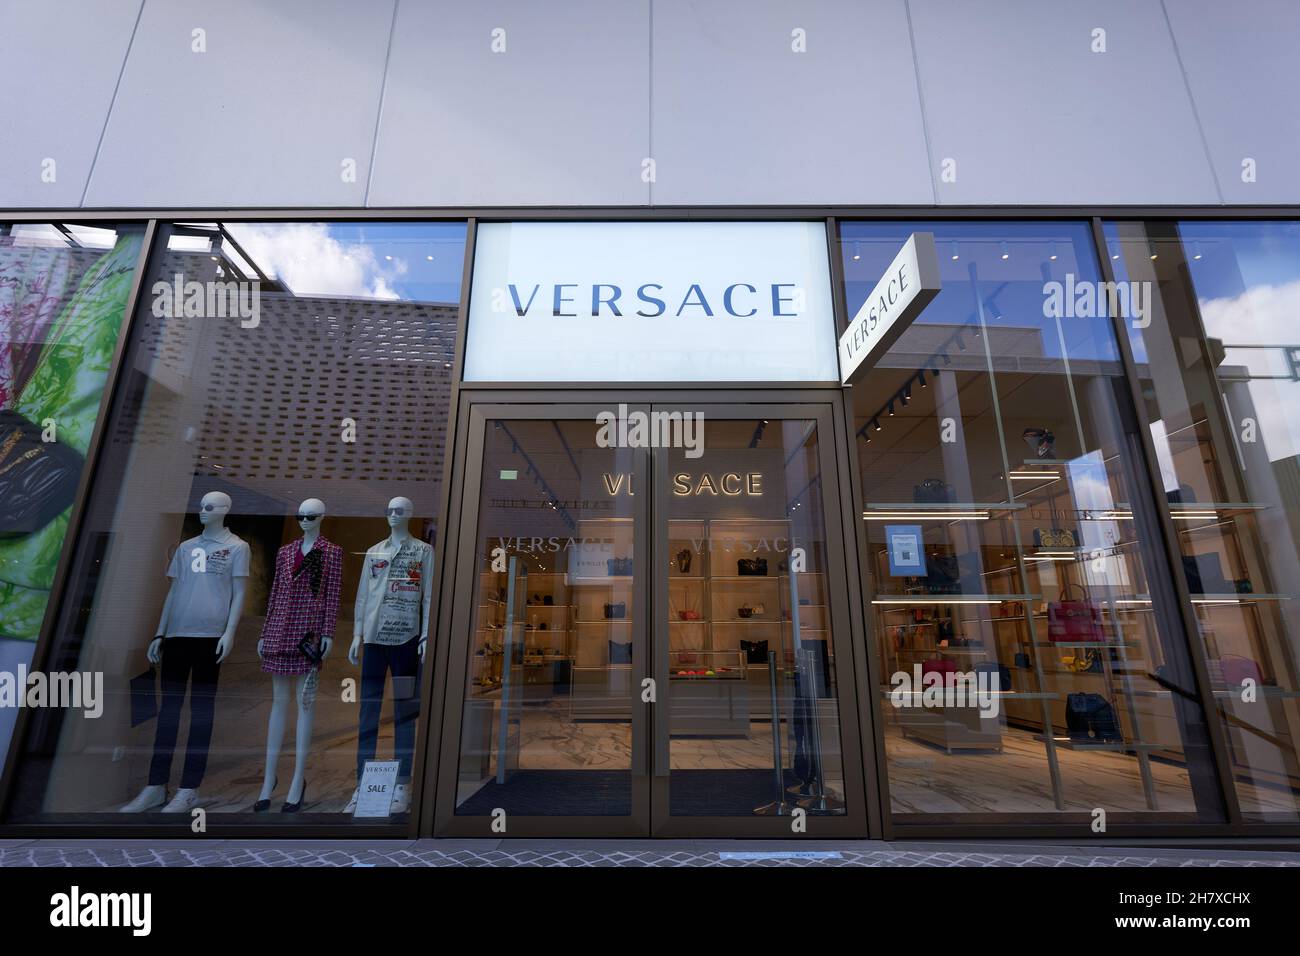 Metzingen, Germania - 20 marzo 2021: Negozio outlet Versace. Vetrina con manichino. Ingresso principale in vetro. Vista frontale. Foto Stock